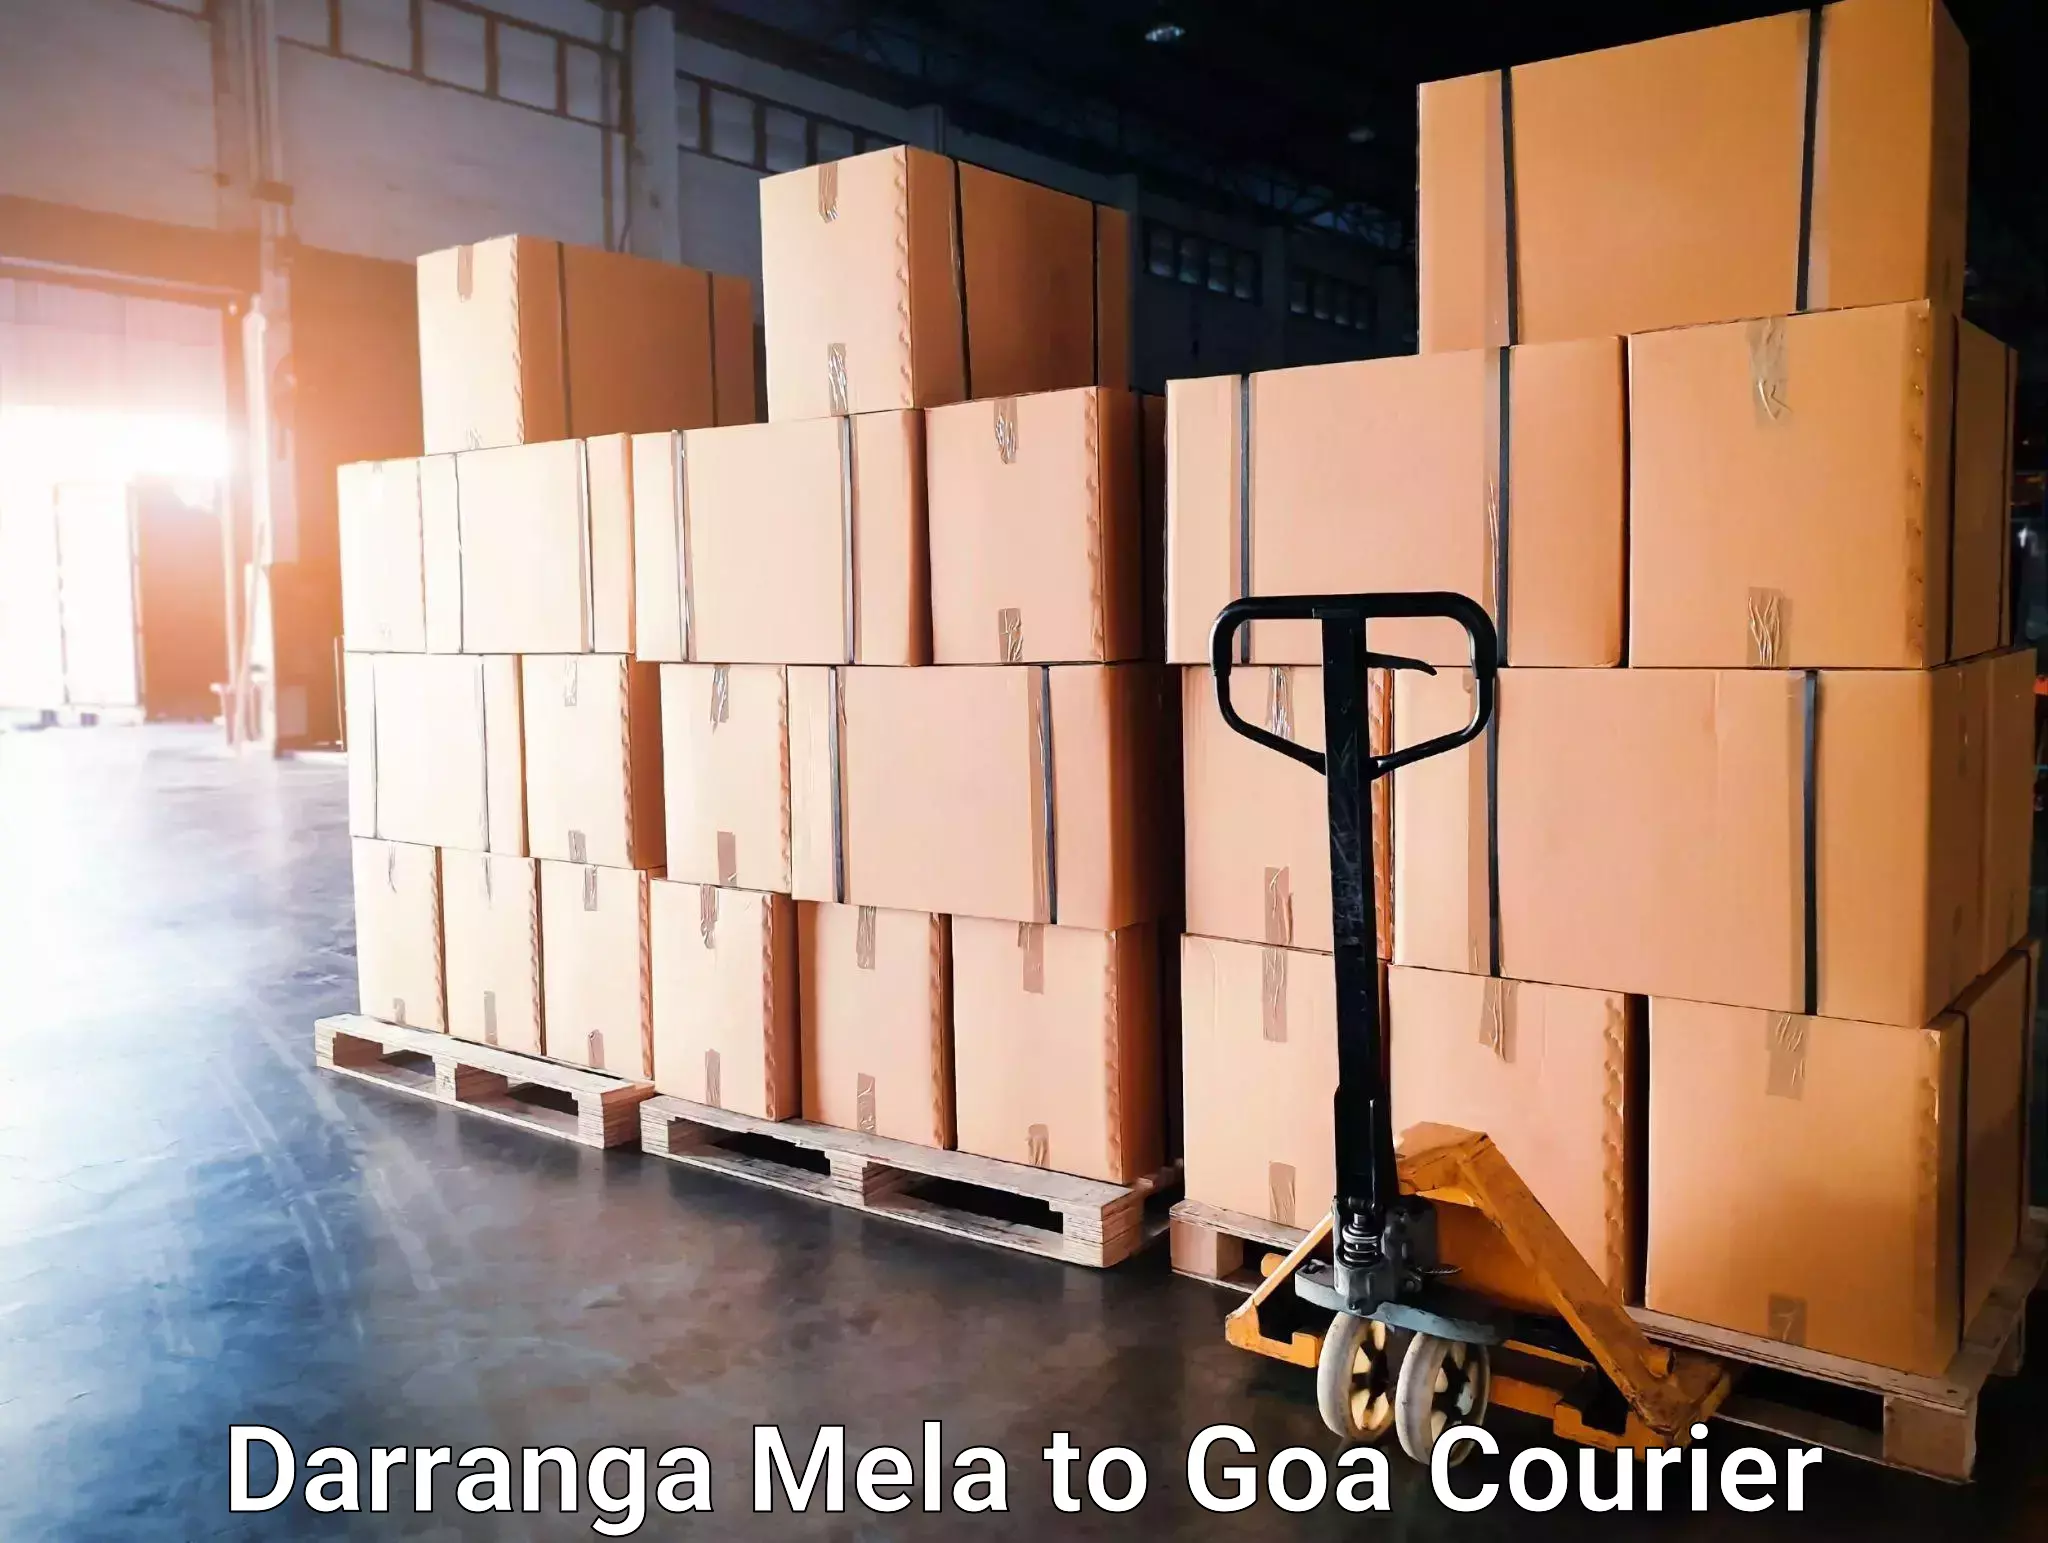 24-hour courier service Darranga Mela to NIT Goa